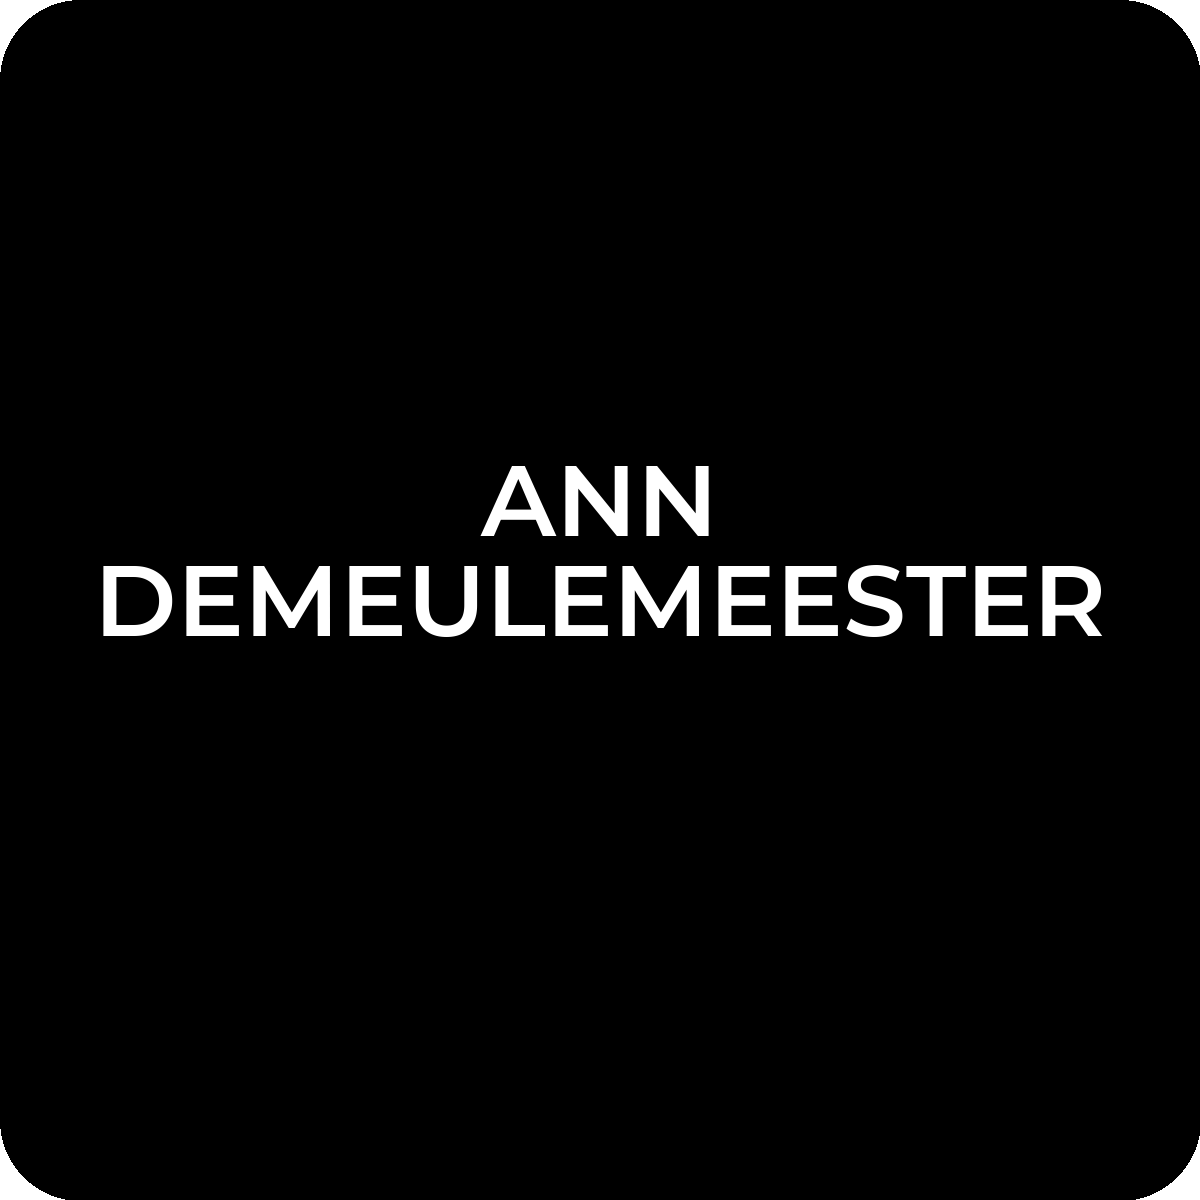 ANN DEMEULEMEESTER Legit Check and Authentication Service – LegitGrails